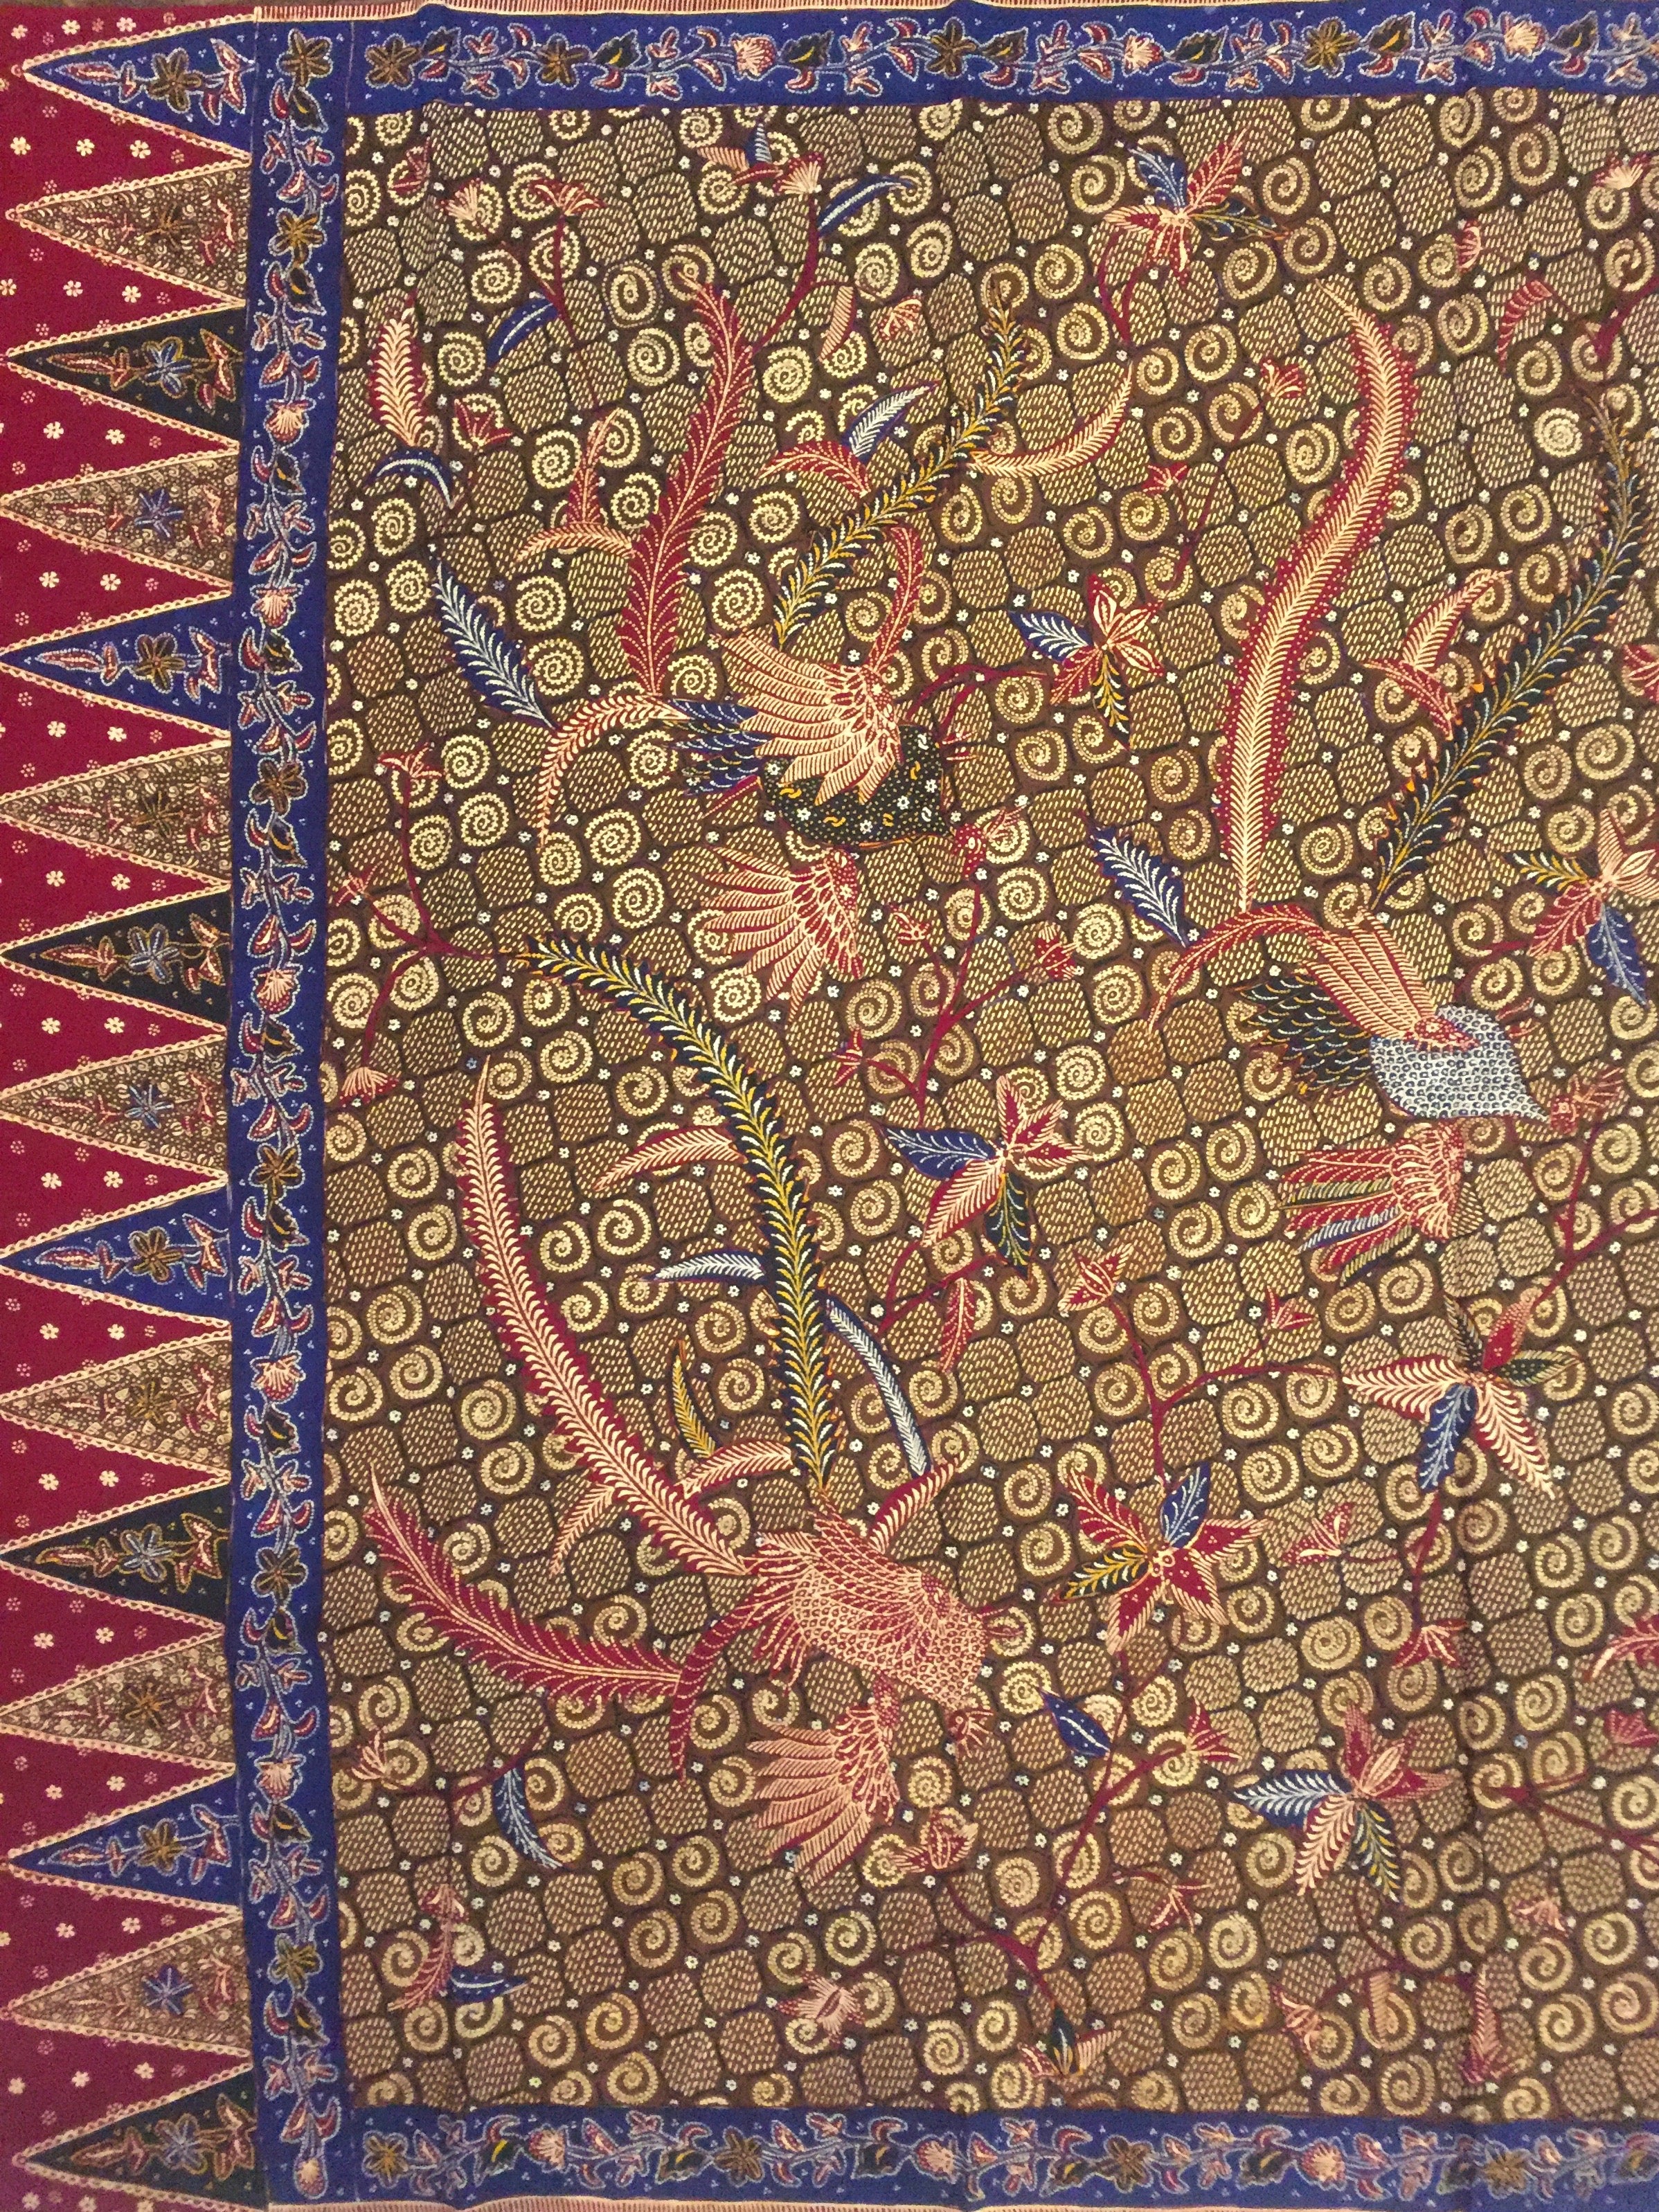 Batik Tulis Batang KR-16.8564